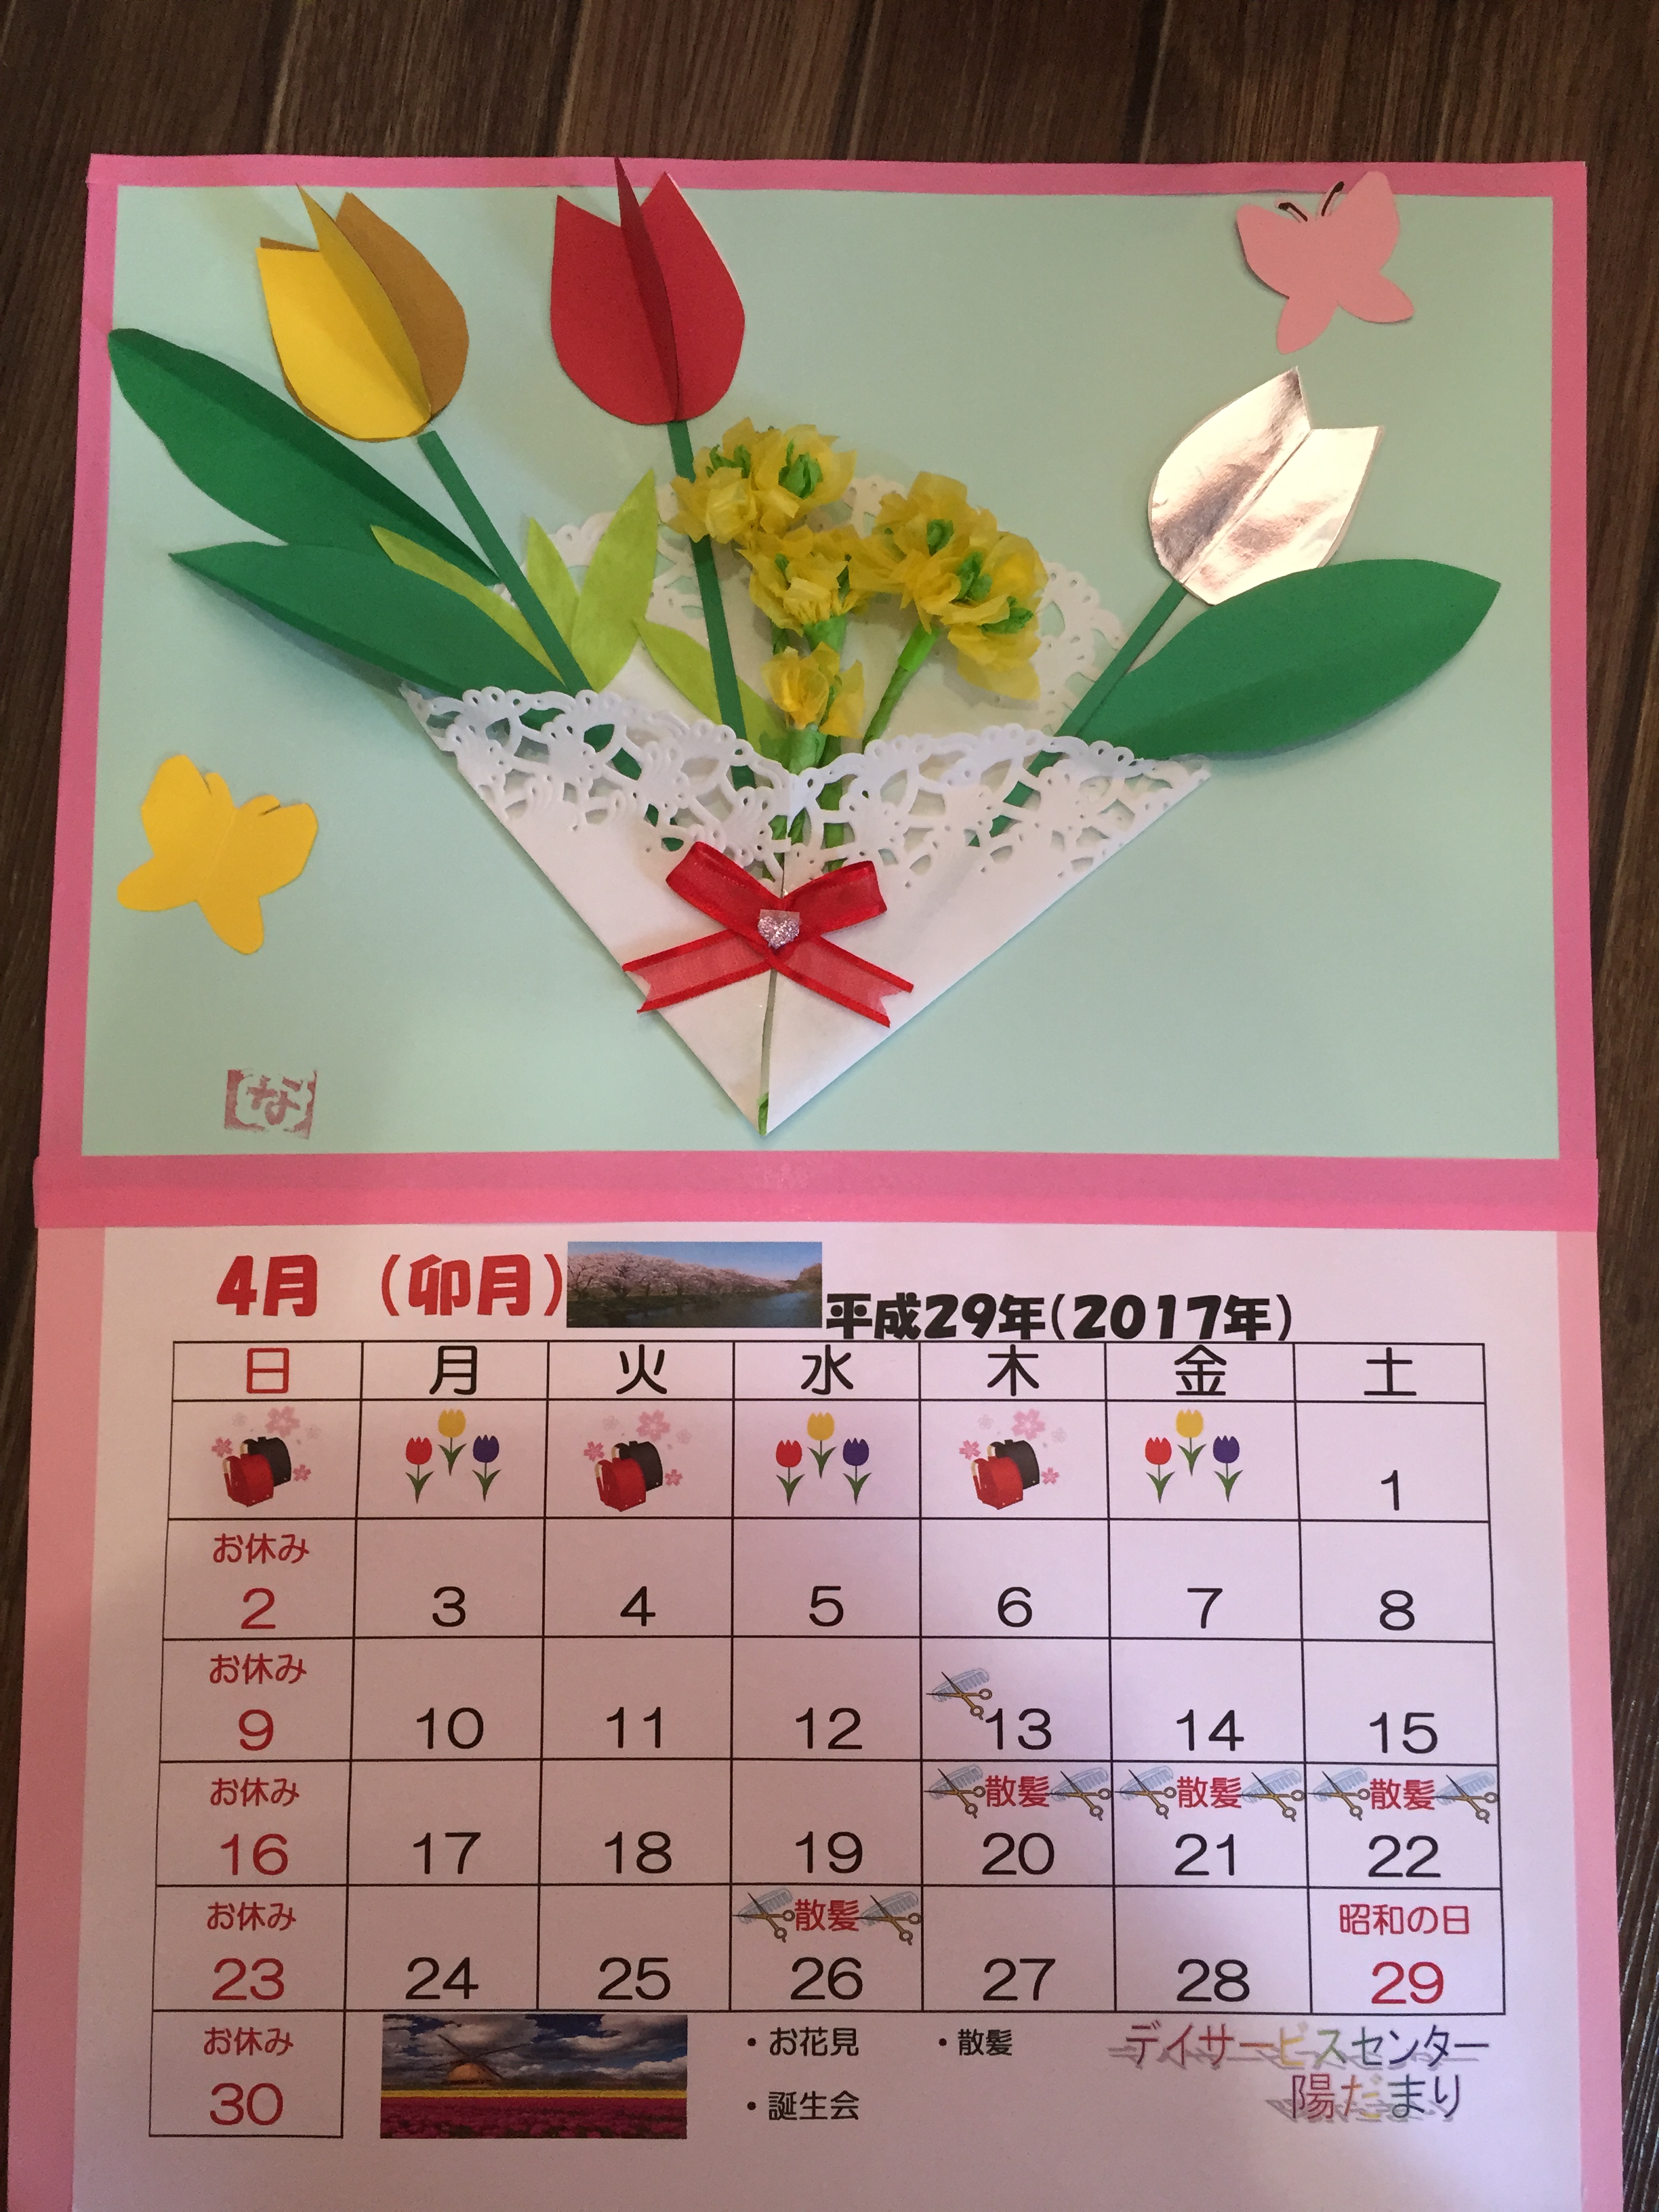 4月のカレンダー作成 完成 デイサービスセンター陽だまり 宝満福祉会